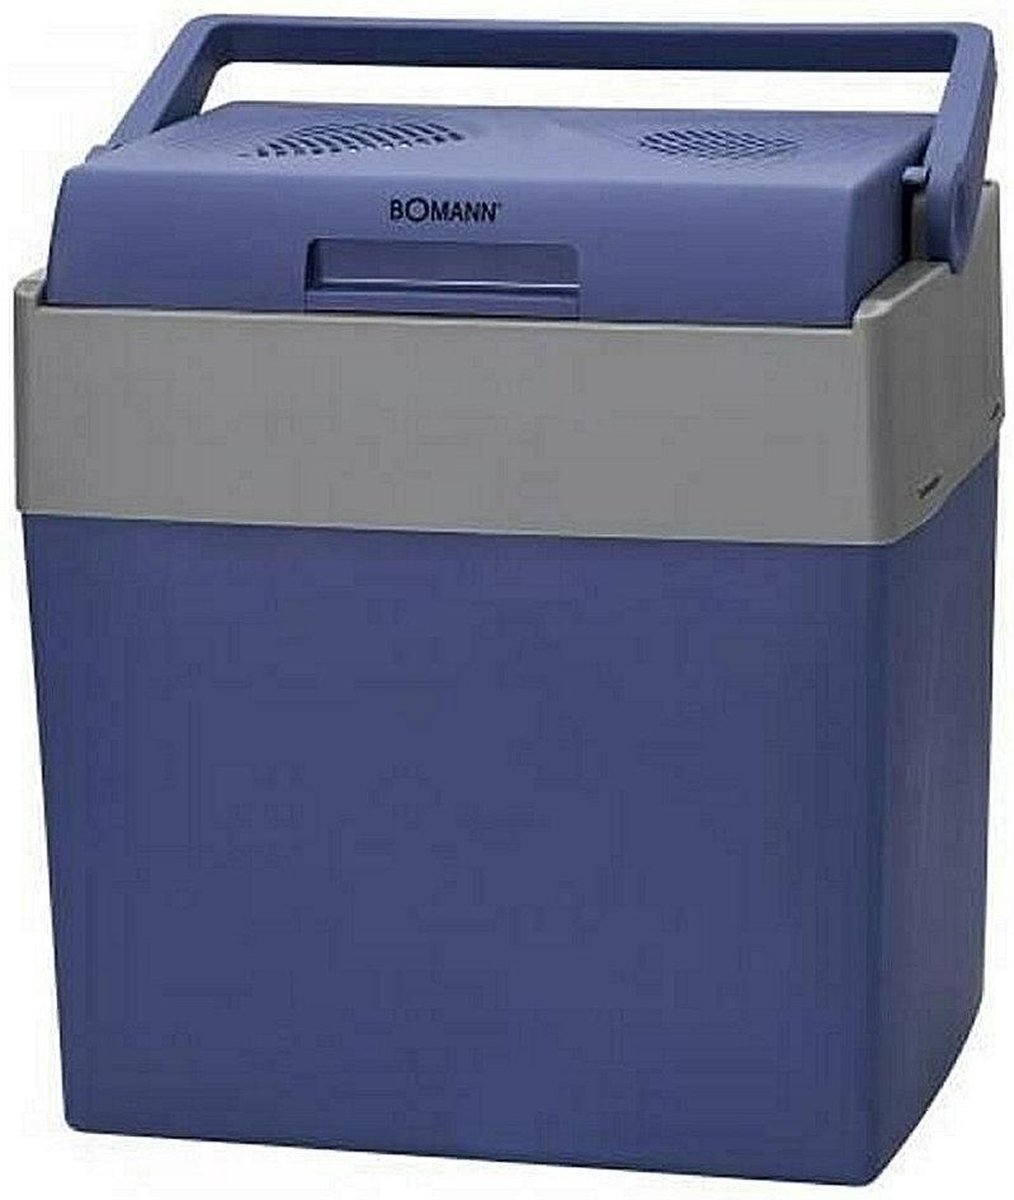 Bomann KB6012 - Elektrische Koelbox Blauw - 28 liter